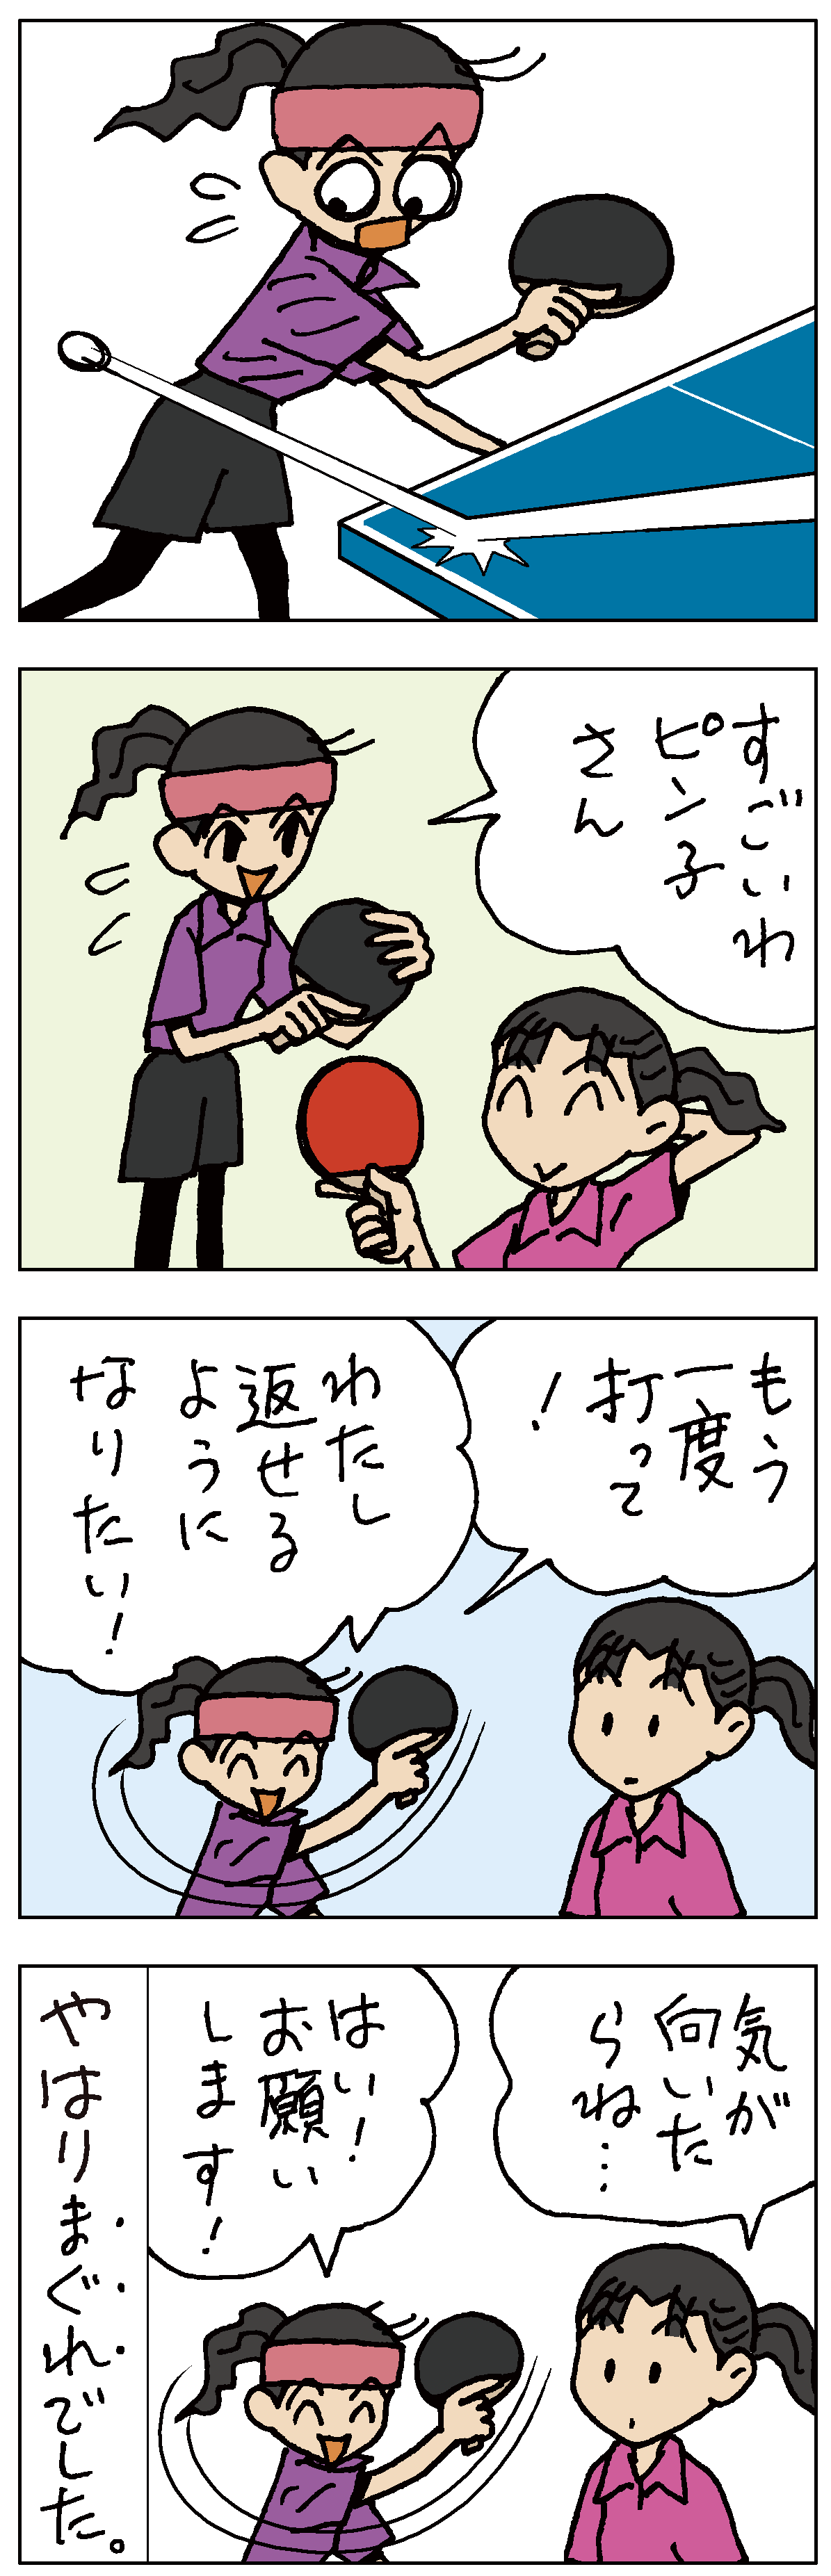 卓球マンガ「ピンポンぱん」006／高橋達央